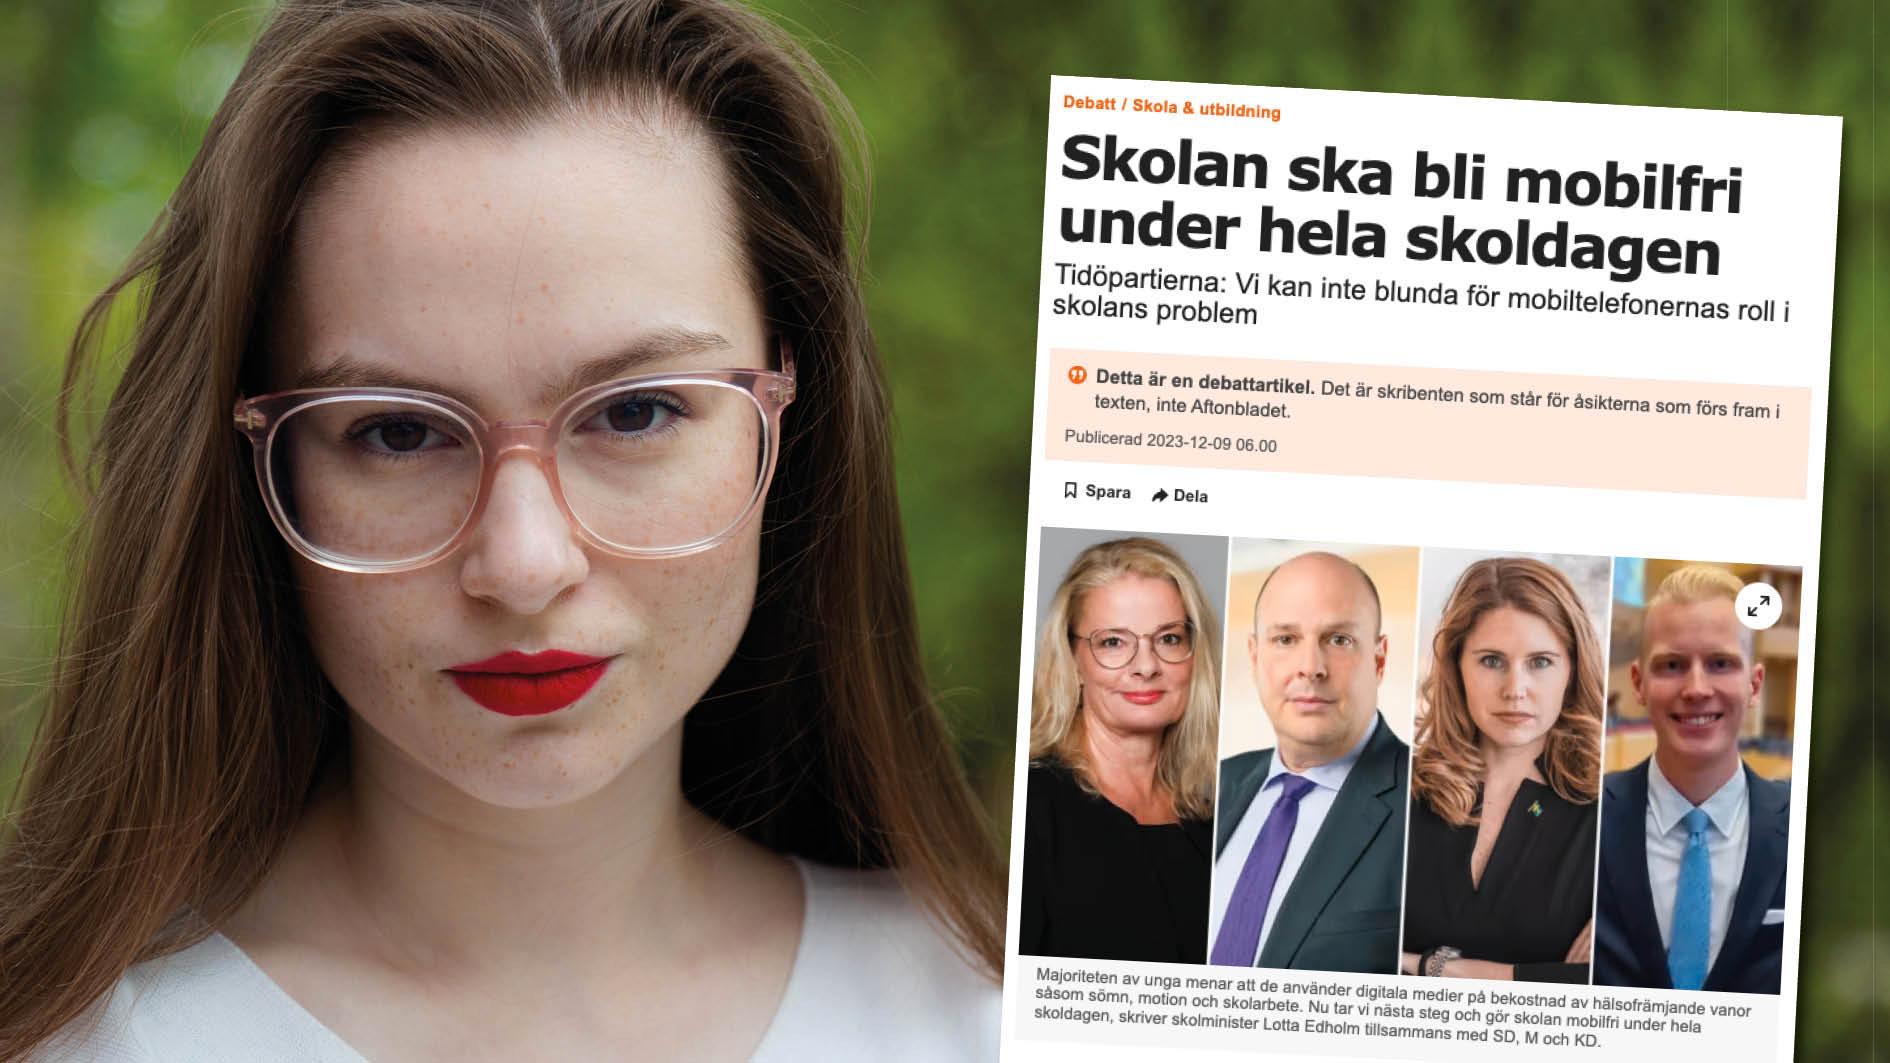 Sveriges elevråd ställer sig kritiskt till ett nationellt totalförbud av mobiltelefoner, elevers raster får inte inskränkas mer än absolut nödvändigt, skriver Lilian Helgason.